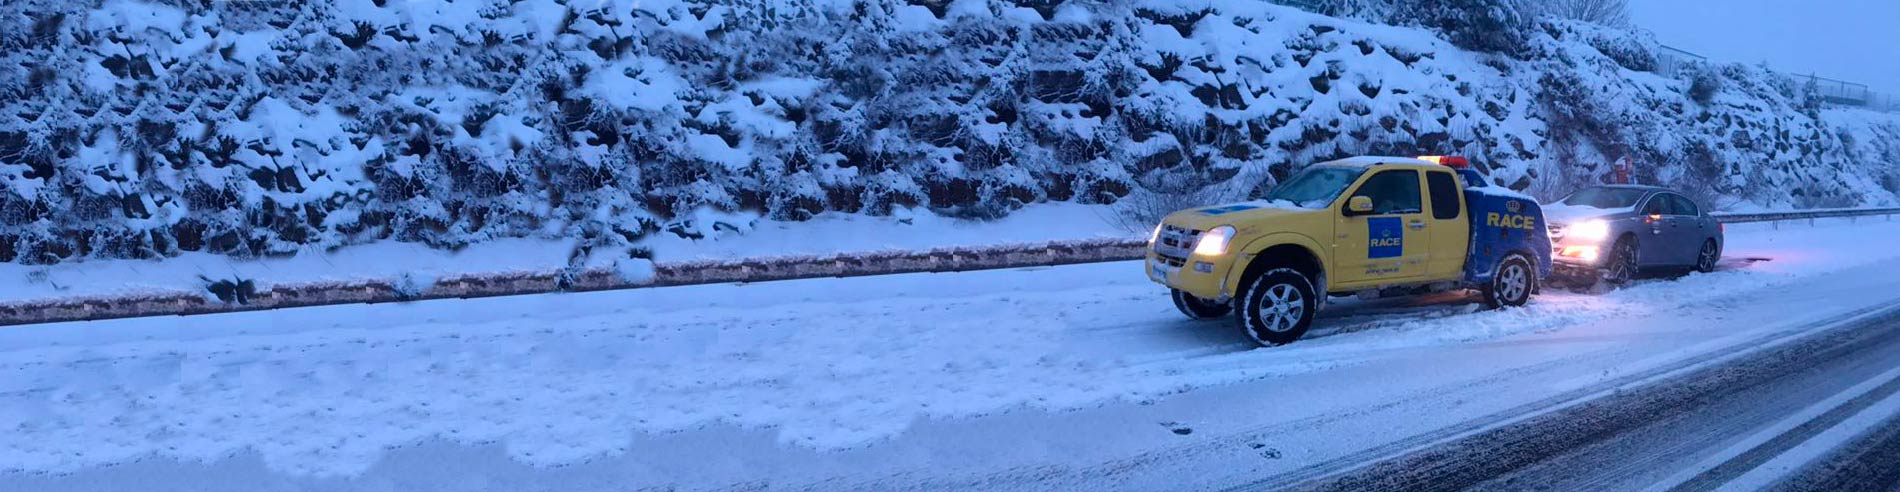 Asistencia en carretera con nieve RACE